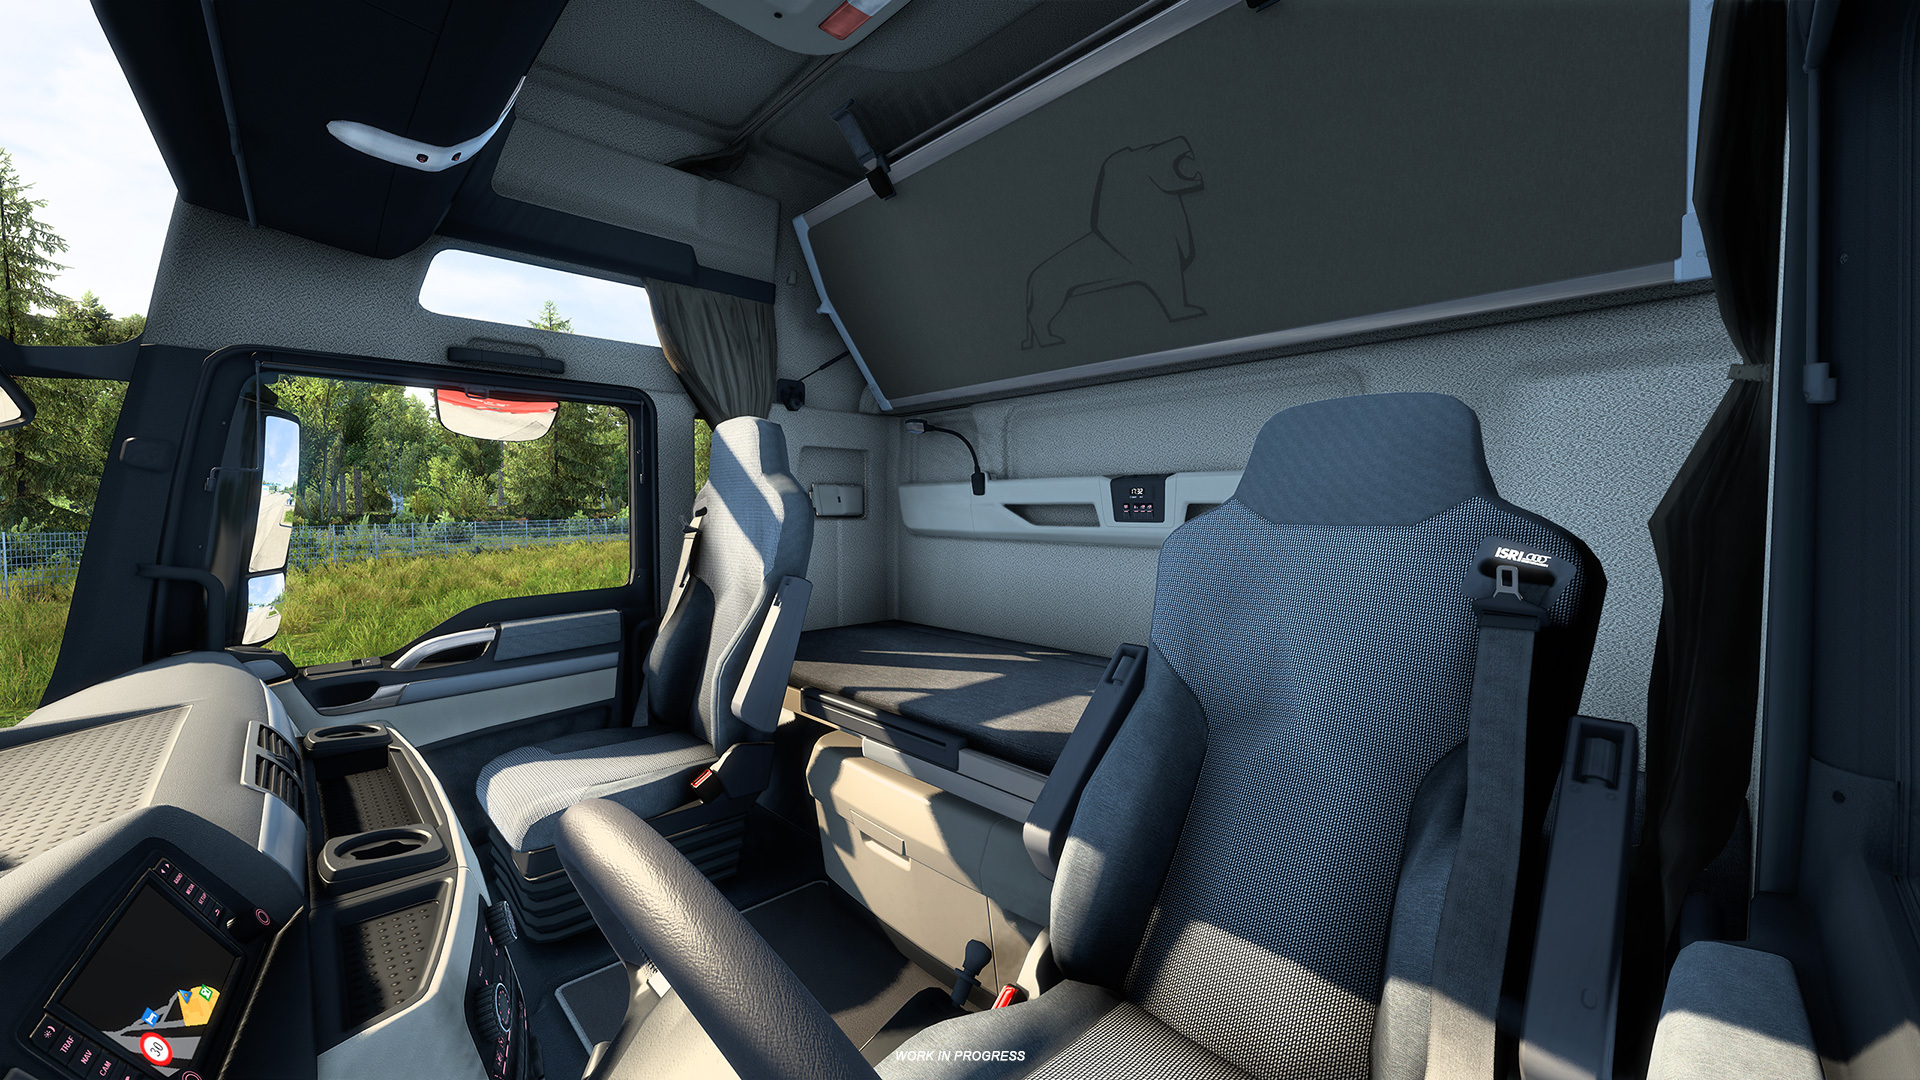 SCS Software - Euro Truck Simulator 2 1.43 Update: MAN TGX EfficientLine 3  - Steam News